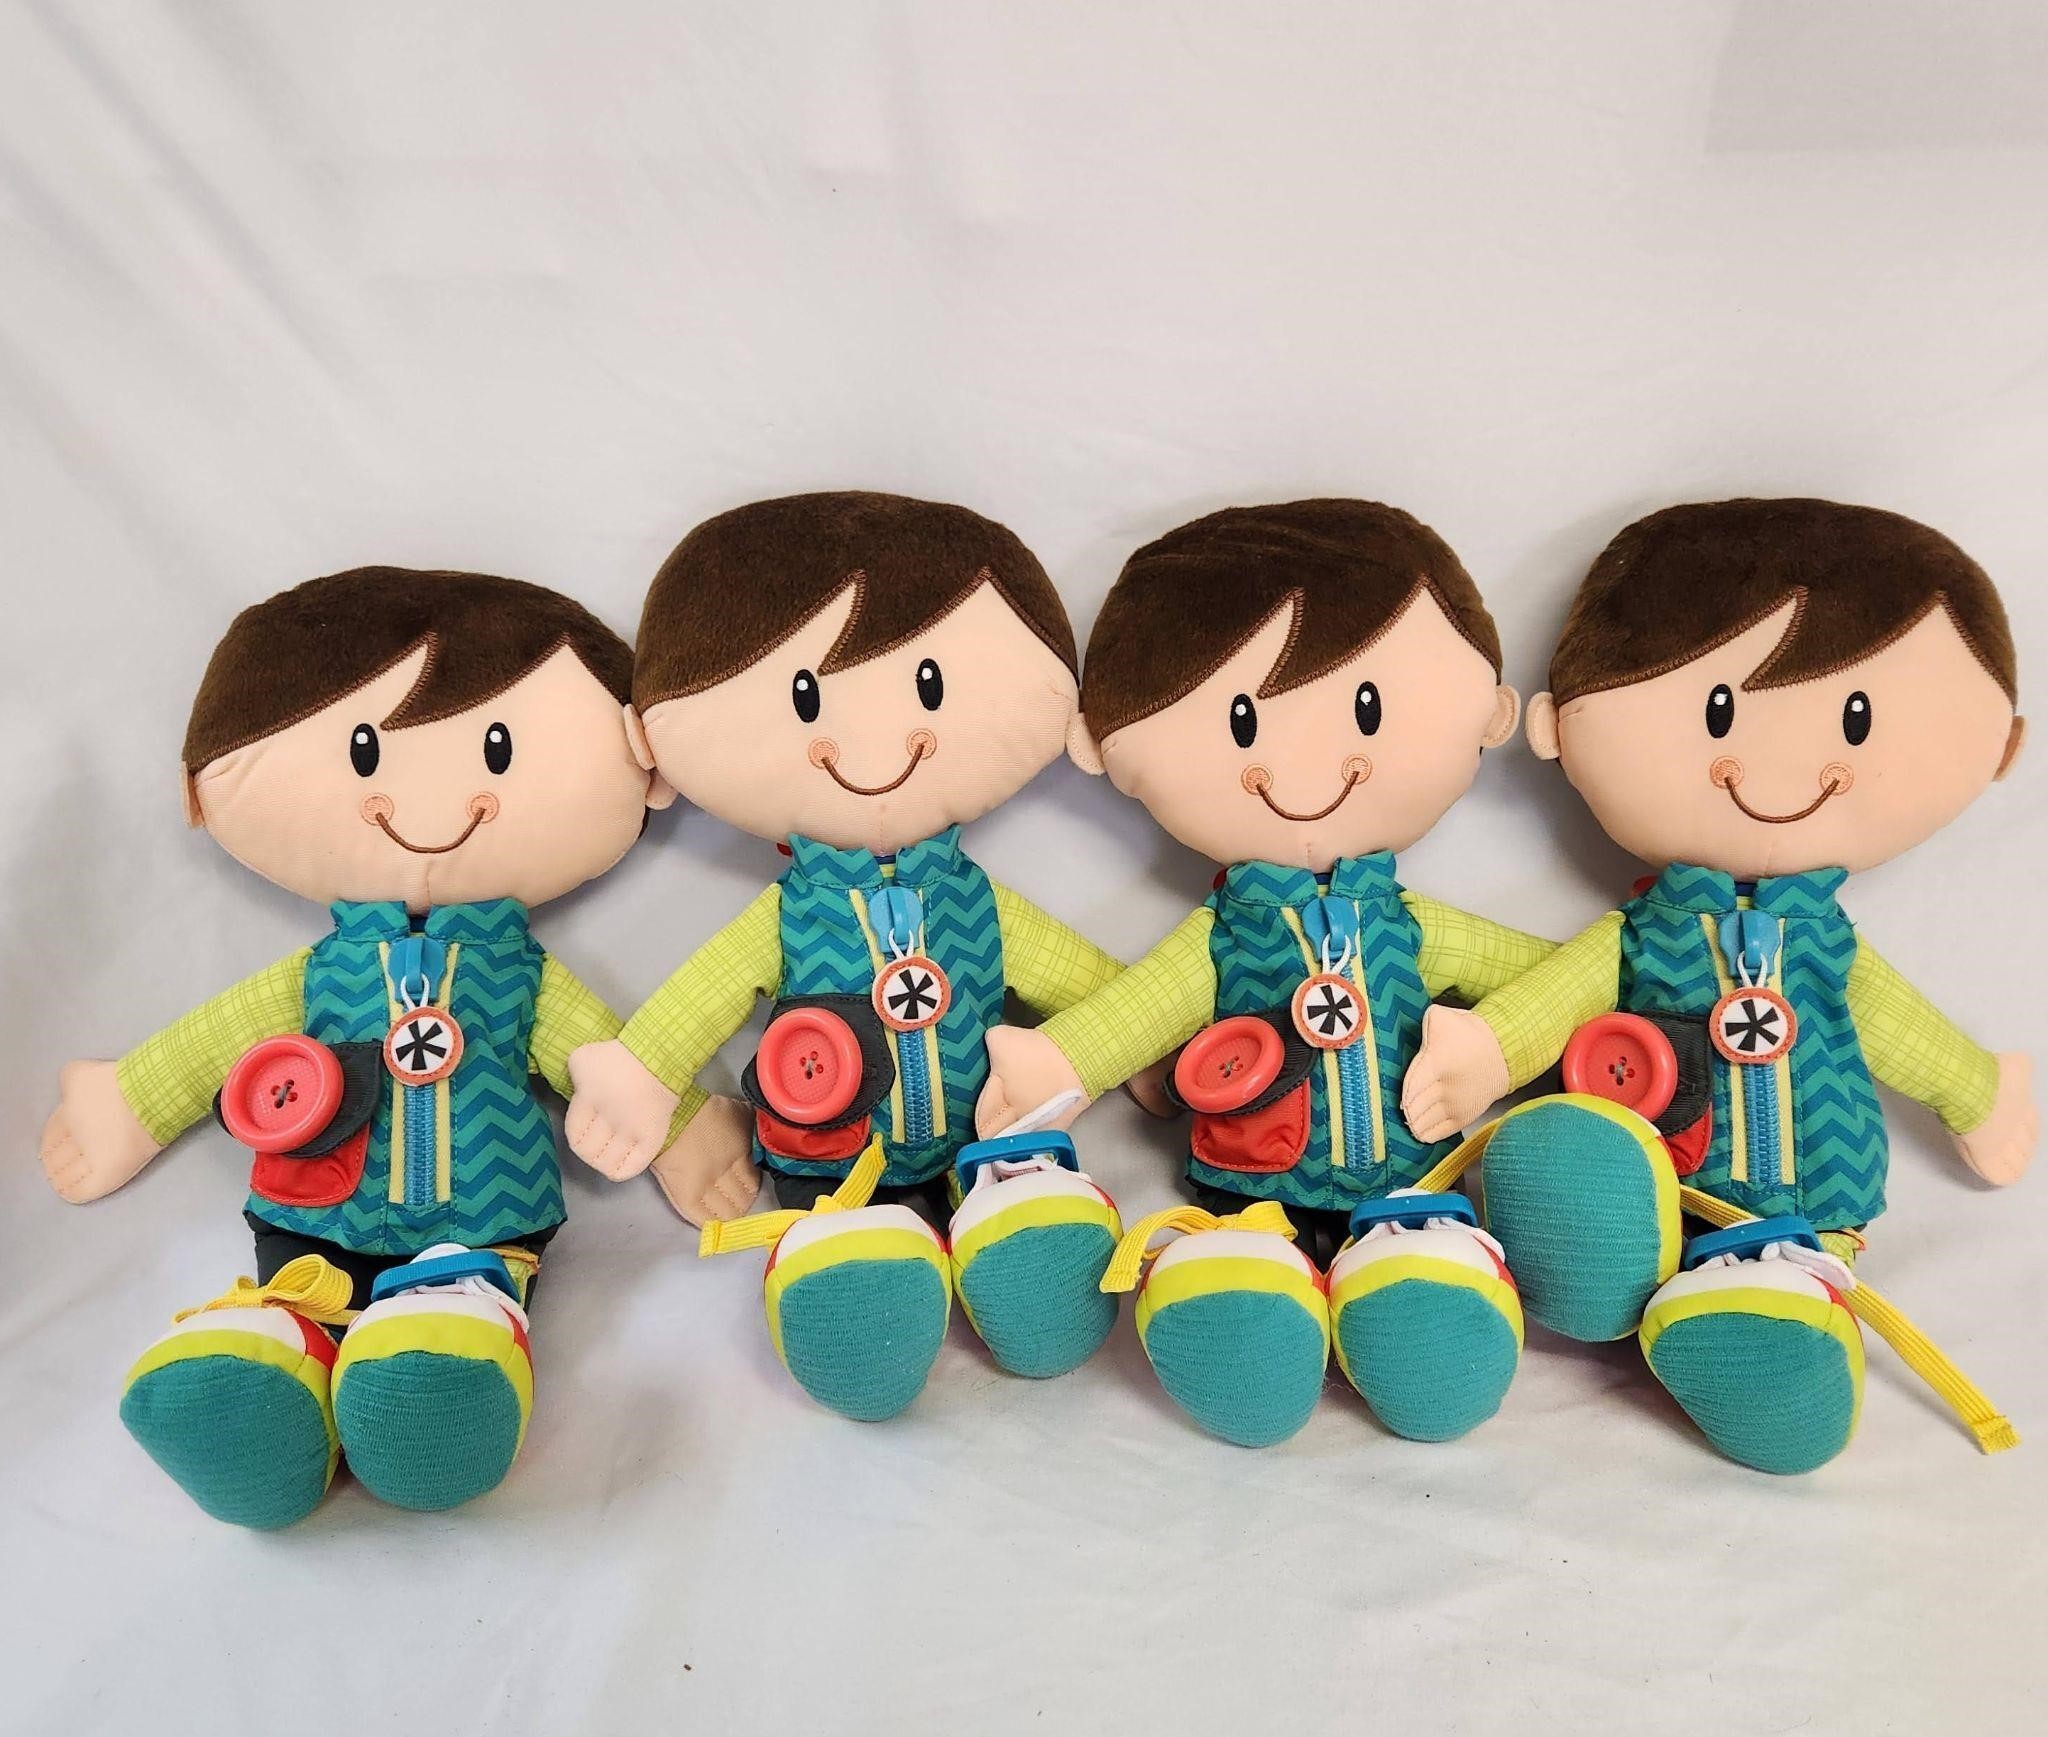 Lot of 4 Playskool Hasbro Stuffed Dolls 2014